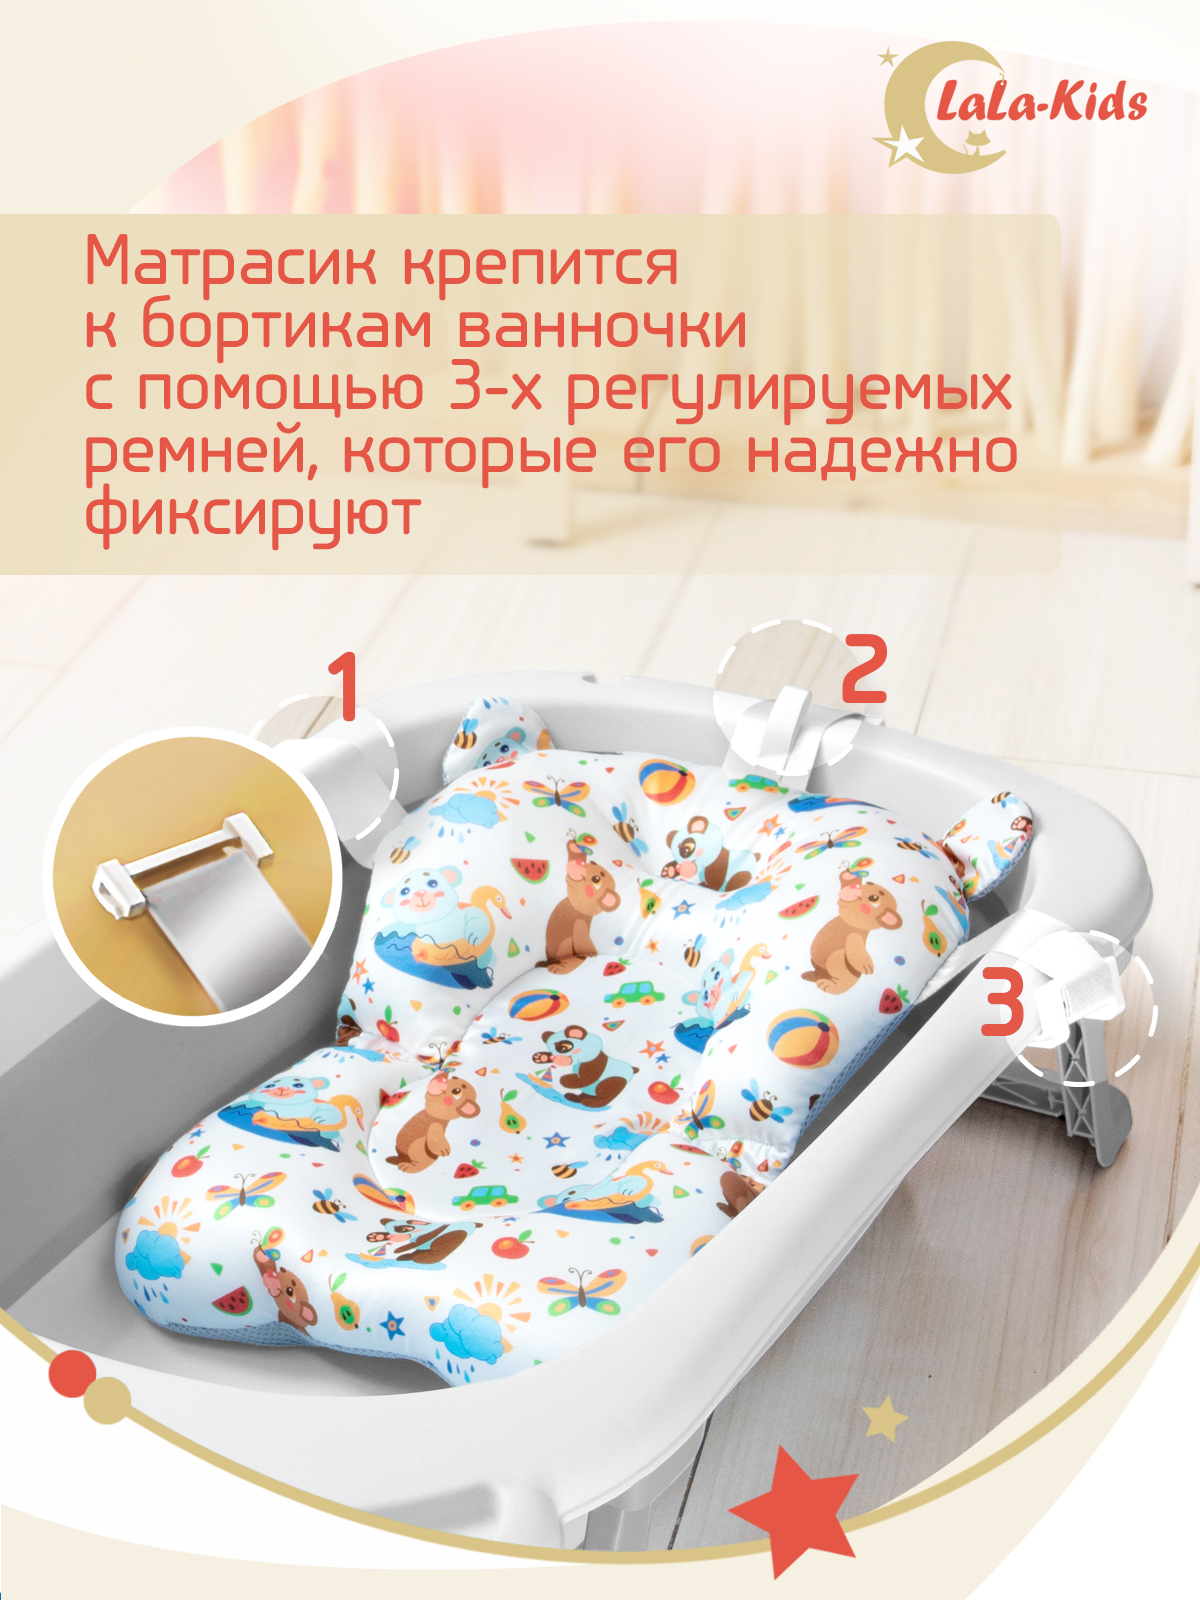 Детская ванночка с термометром LaLa-Kids складная с матрасиком коричневым в комплекте - фото 15